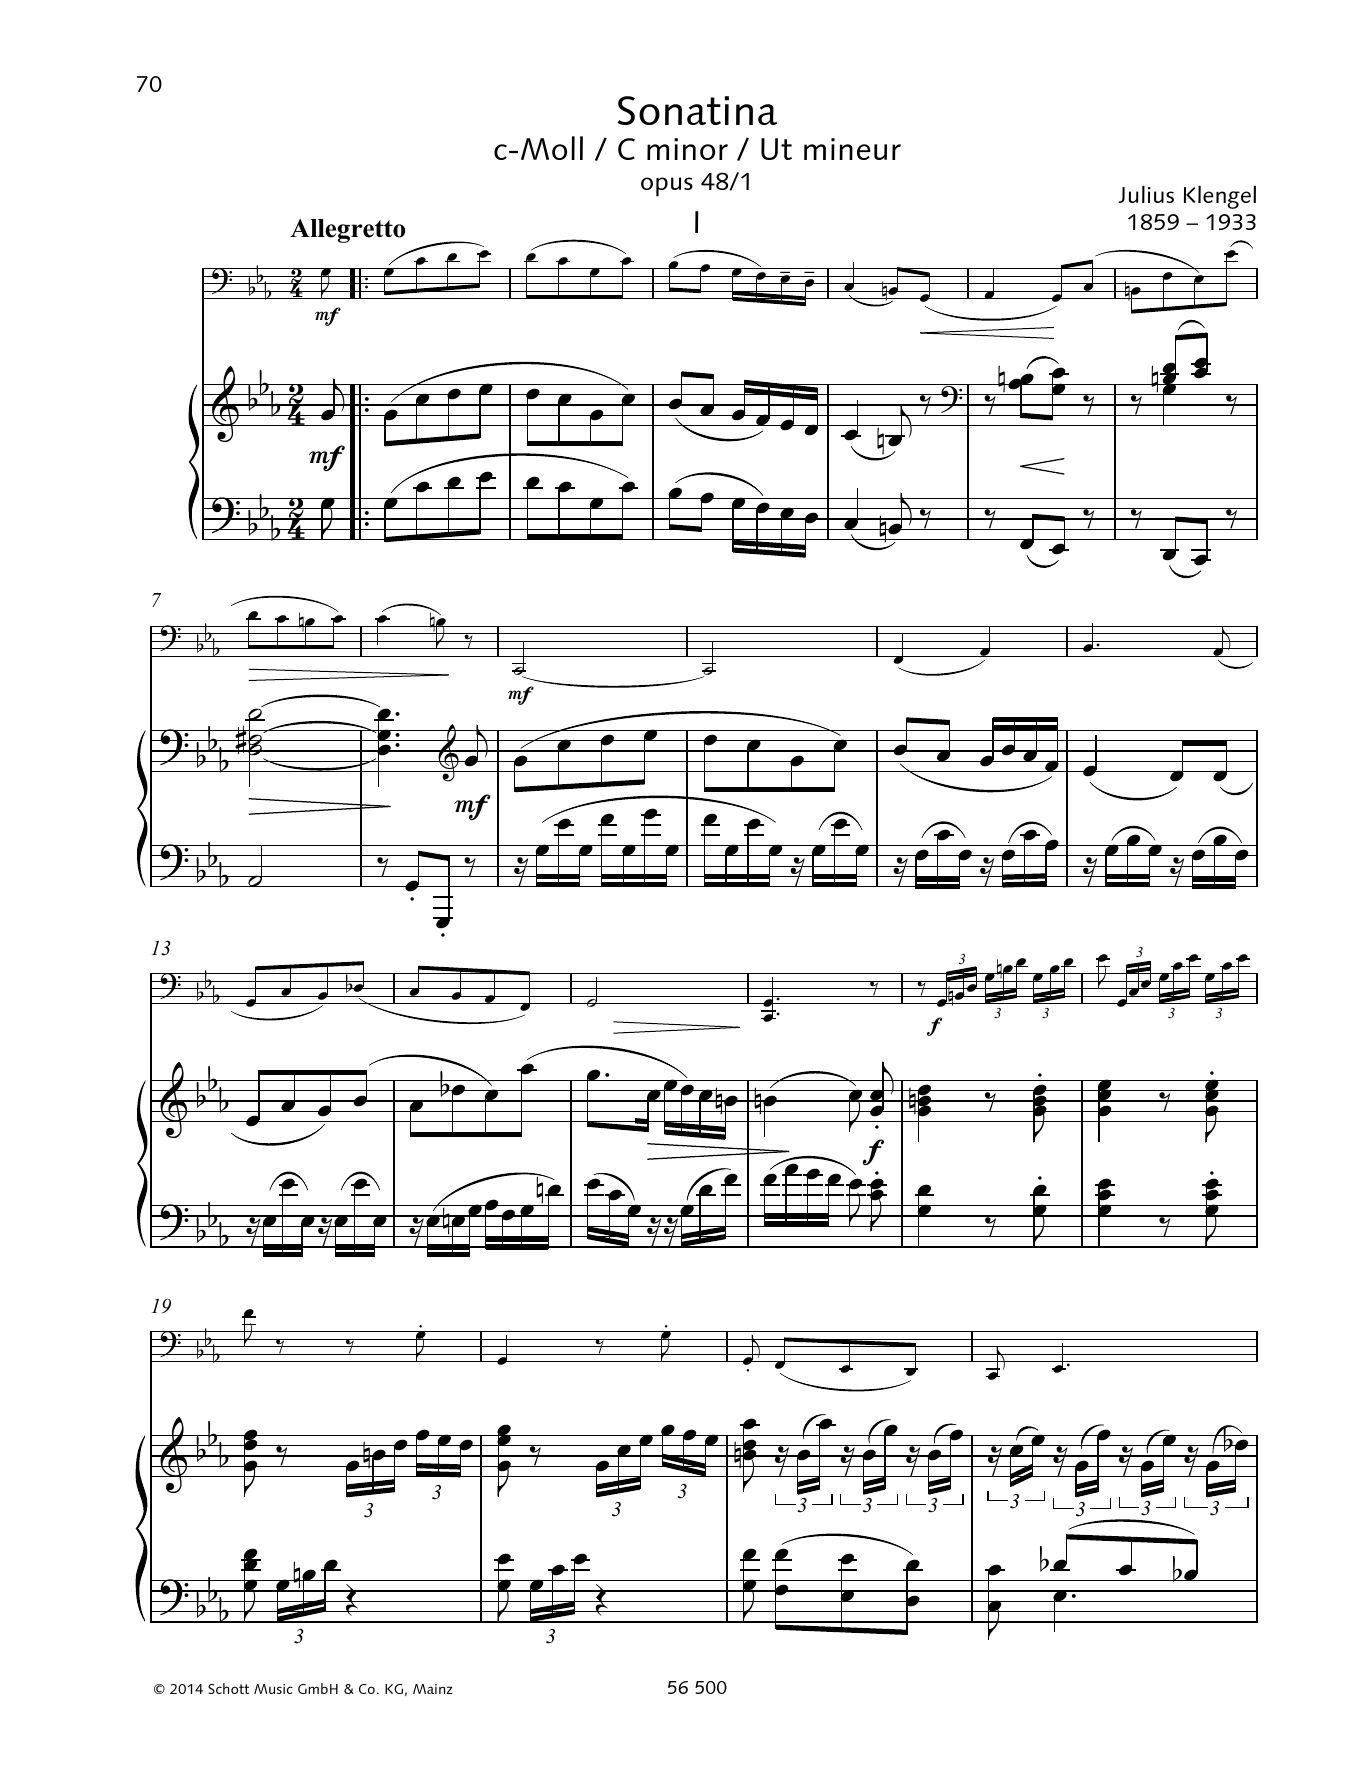 Download Julius Klengel Sonatina C minor Sheet Music